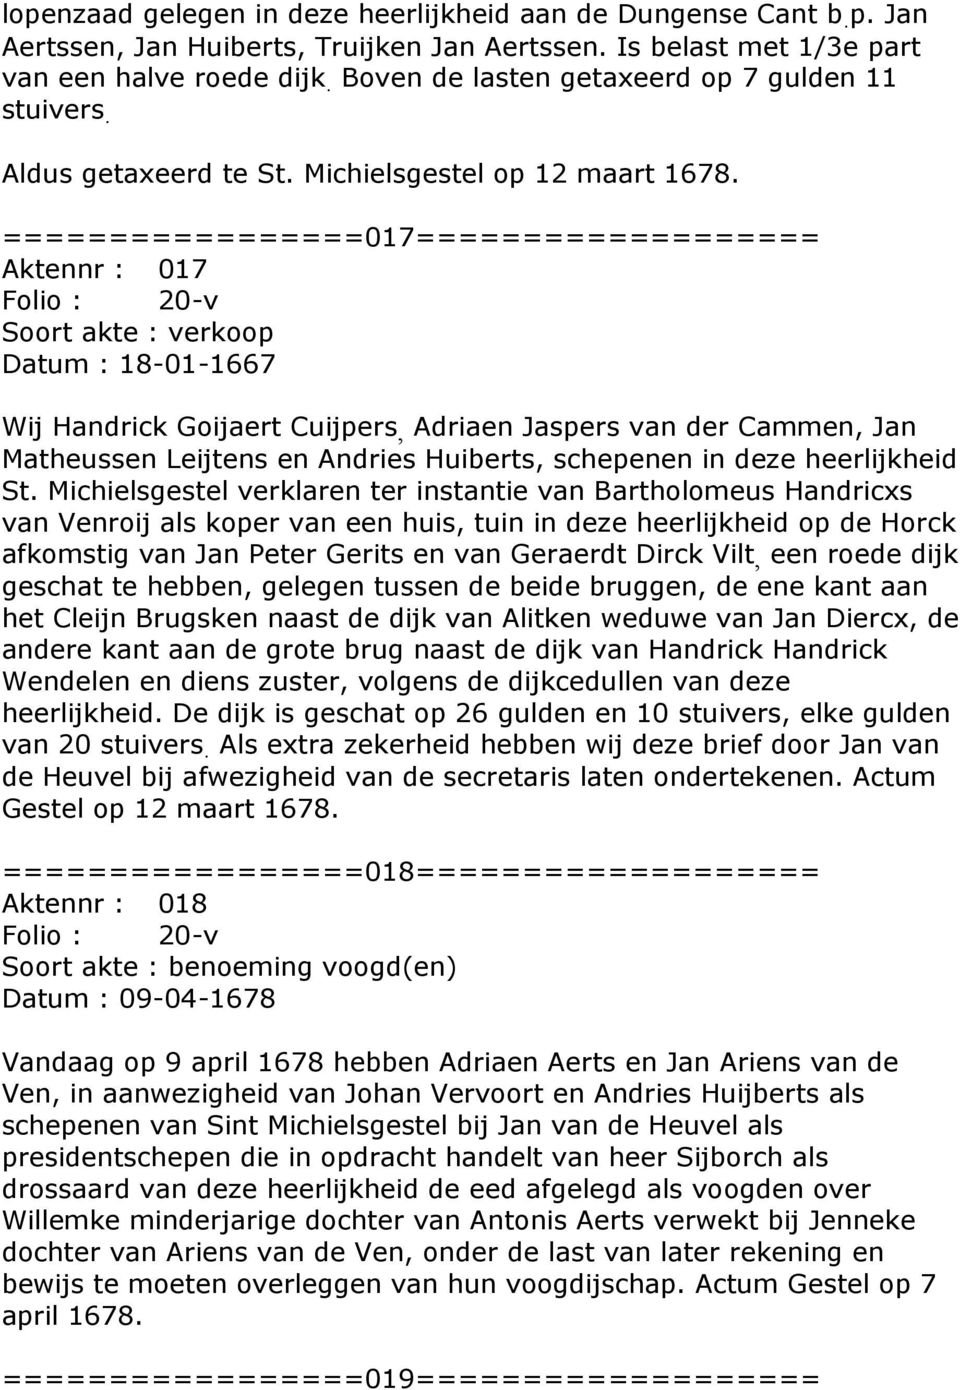 =================017=================== Aktennr : 017 Folio : 20-v Soort akte : verkoop Datum : 18-01-1667 Wij Handrick Goijaert Cuijpers, Adriaen Jaspers van der Cammen, Jan Matheussen Leijtens en